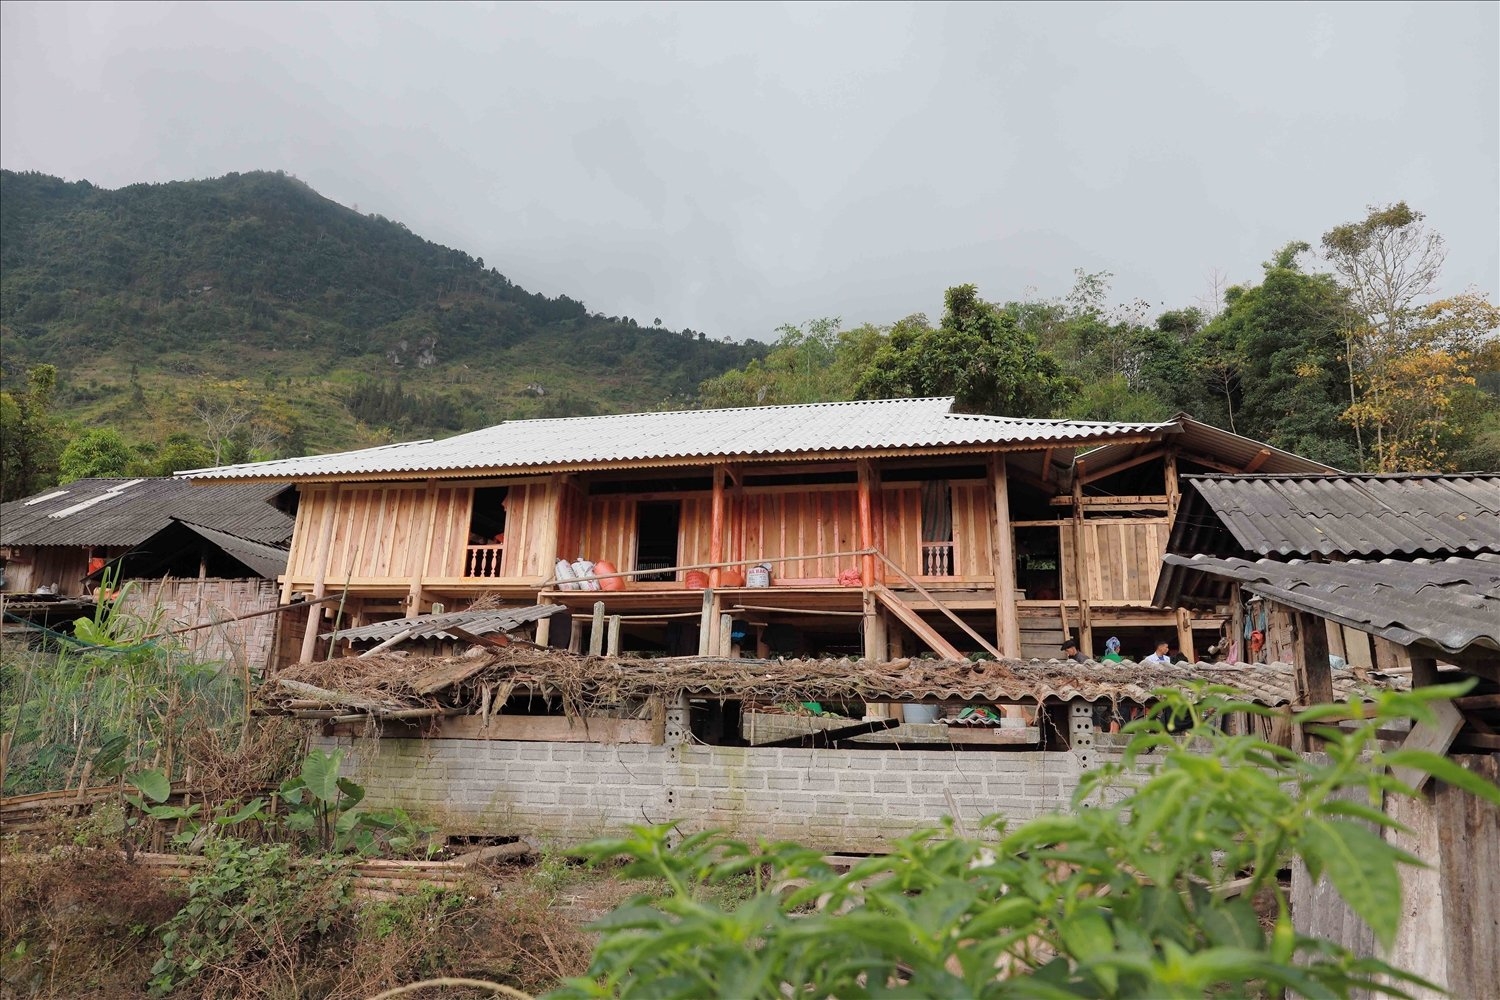 Căn nhà tại thôn Cóc Rế được nhà nước hỗ trợ xây dựng theo lối kiến trúc truyền thống của đồng bào dân tộc Nùng